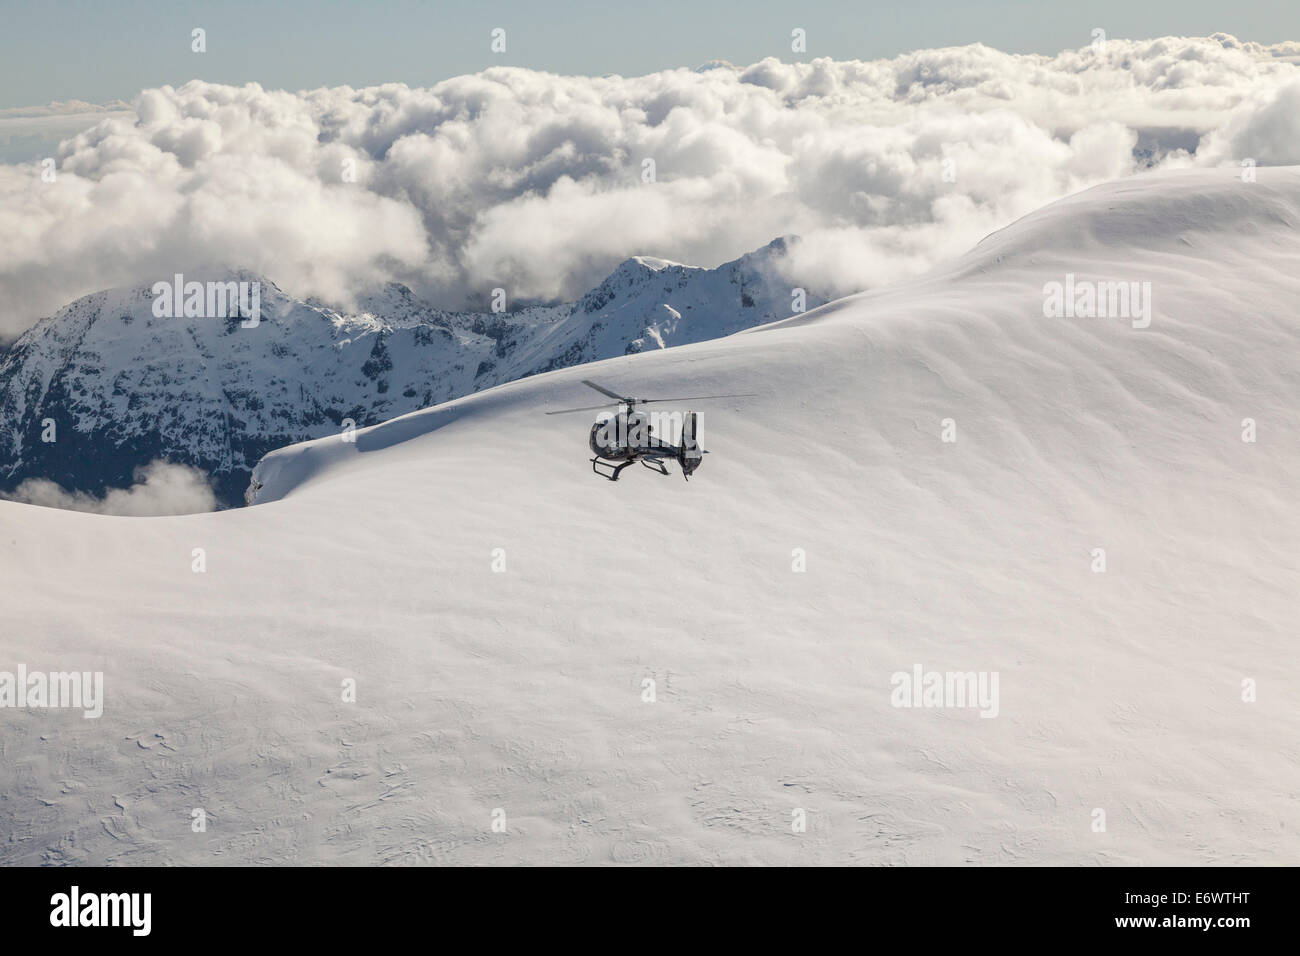 Vol en hélicoptère au-dessus des montagnes enneigées, île du Sud, Nouvelle-Zélande Banque D'Images